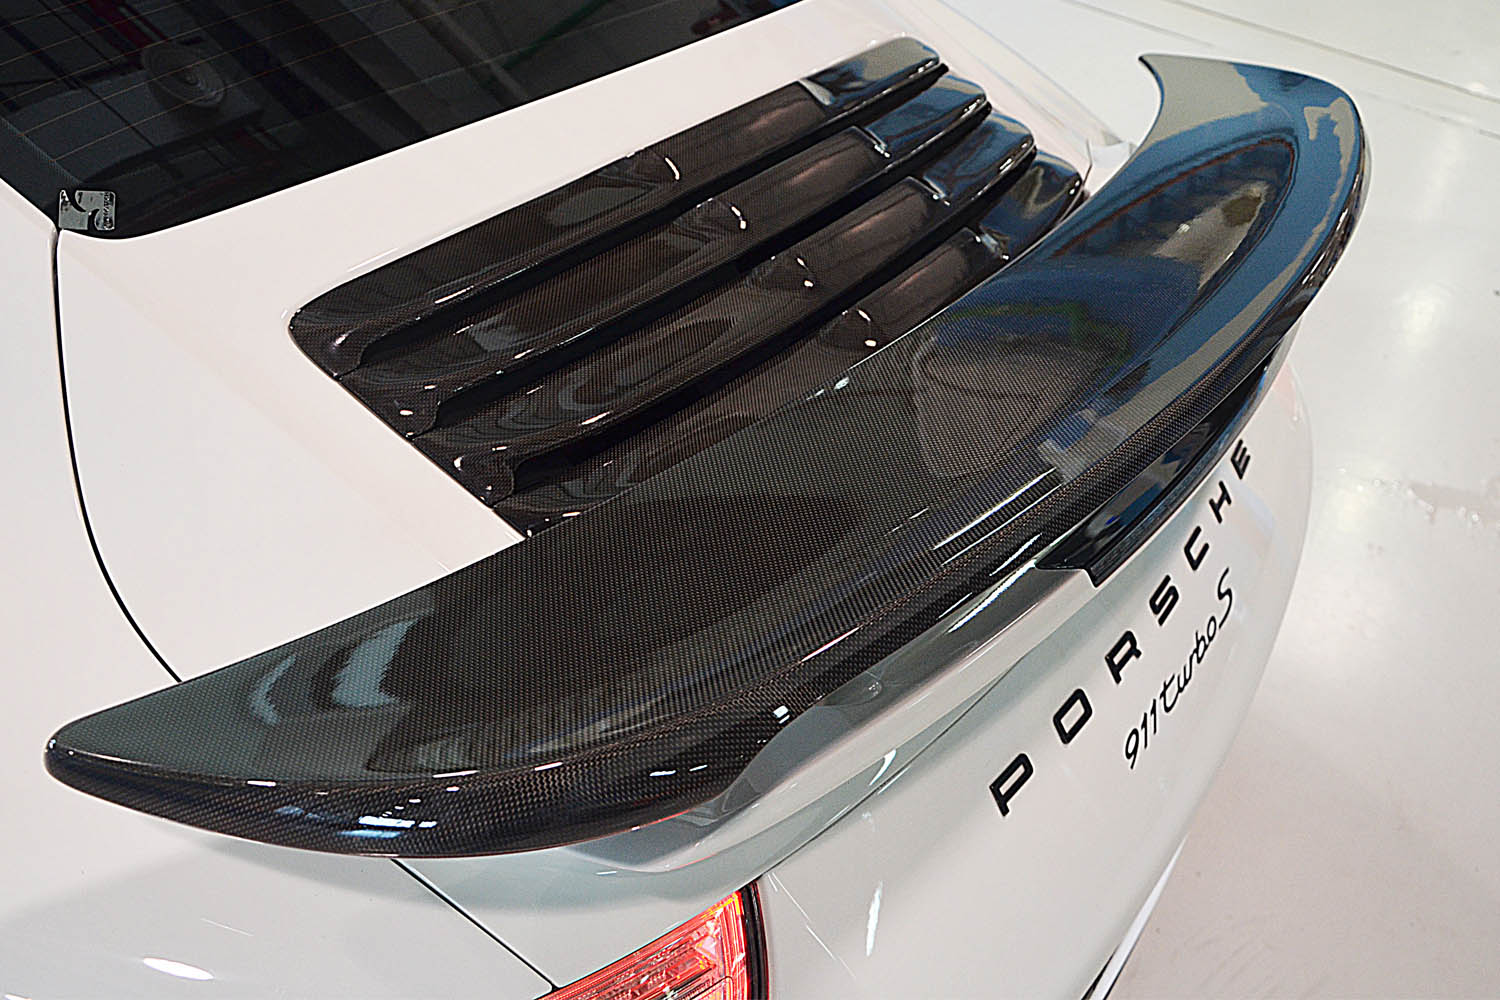  Porsche 991 turbo Carbon Lufteinlass Lamellen Motordeckel Echt Carbon Heckspoiler Flügel Carbonteile Spoiler Motor Deckel